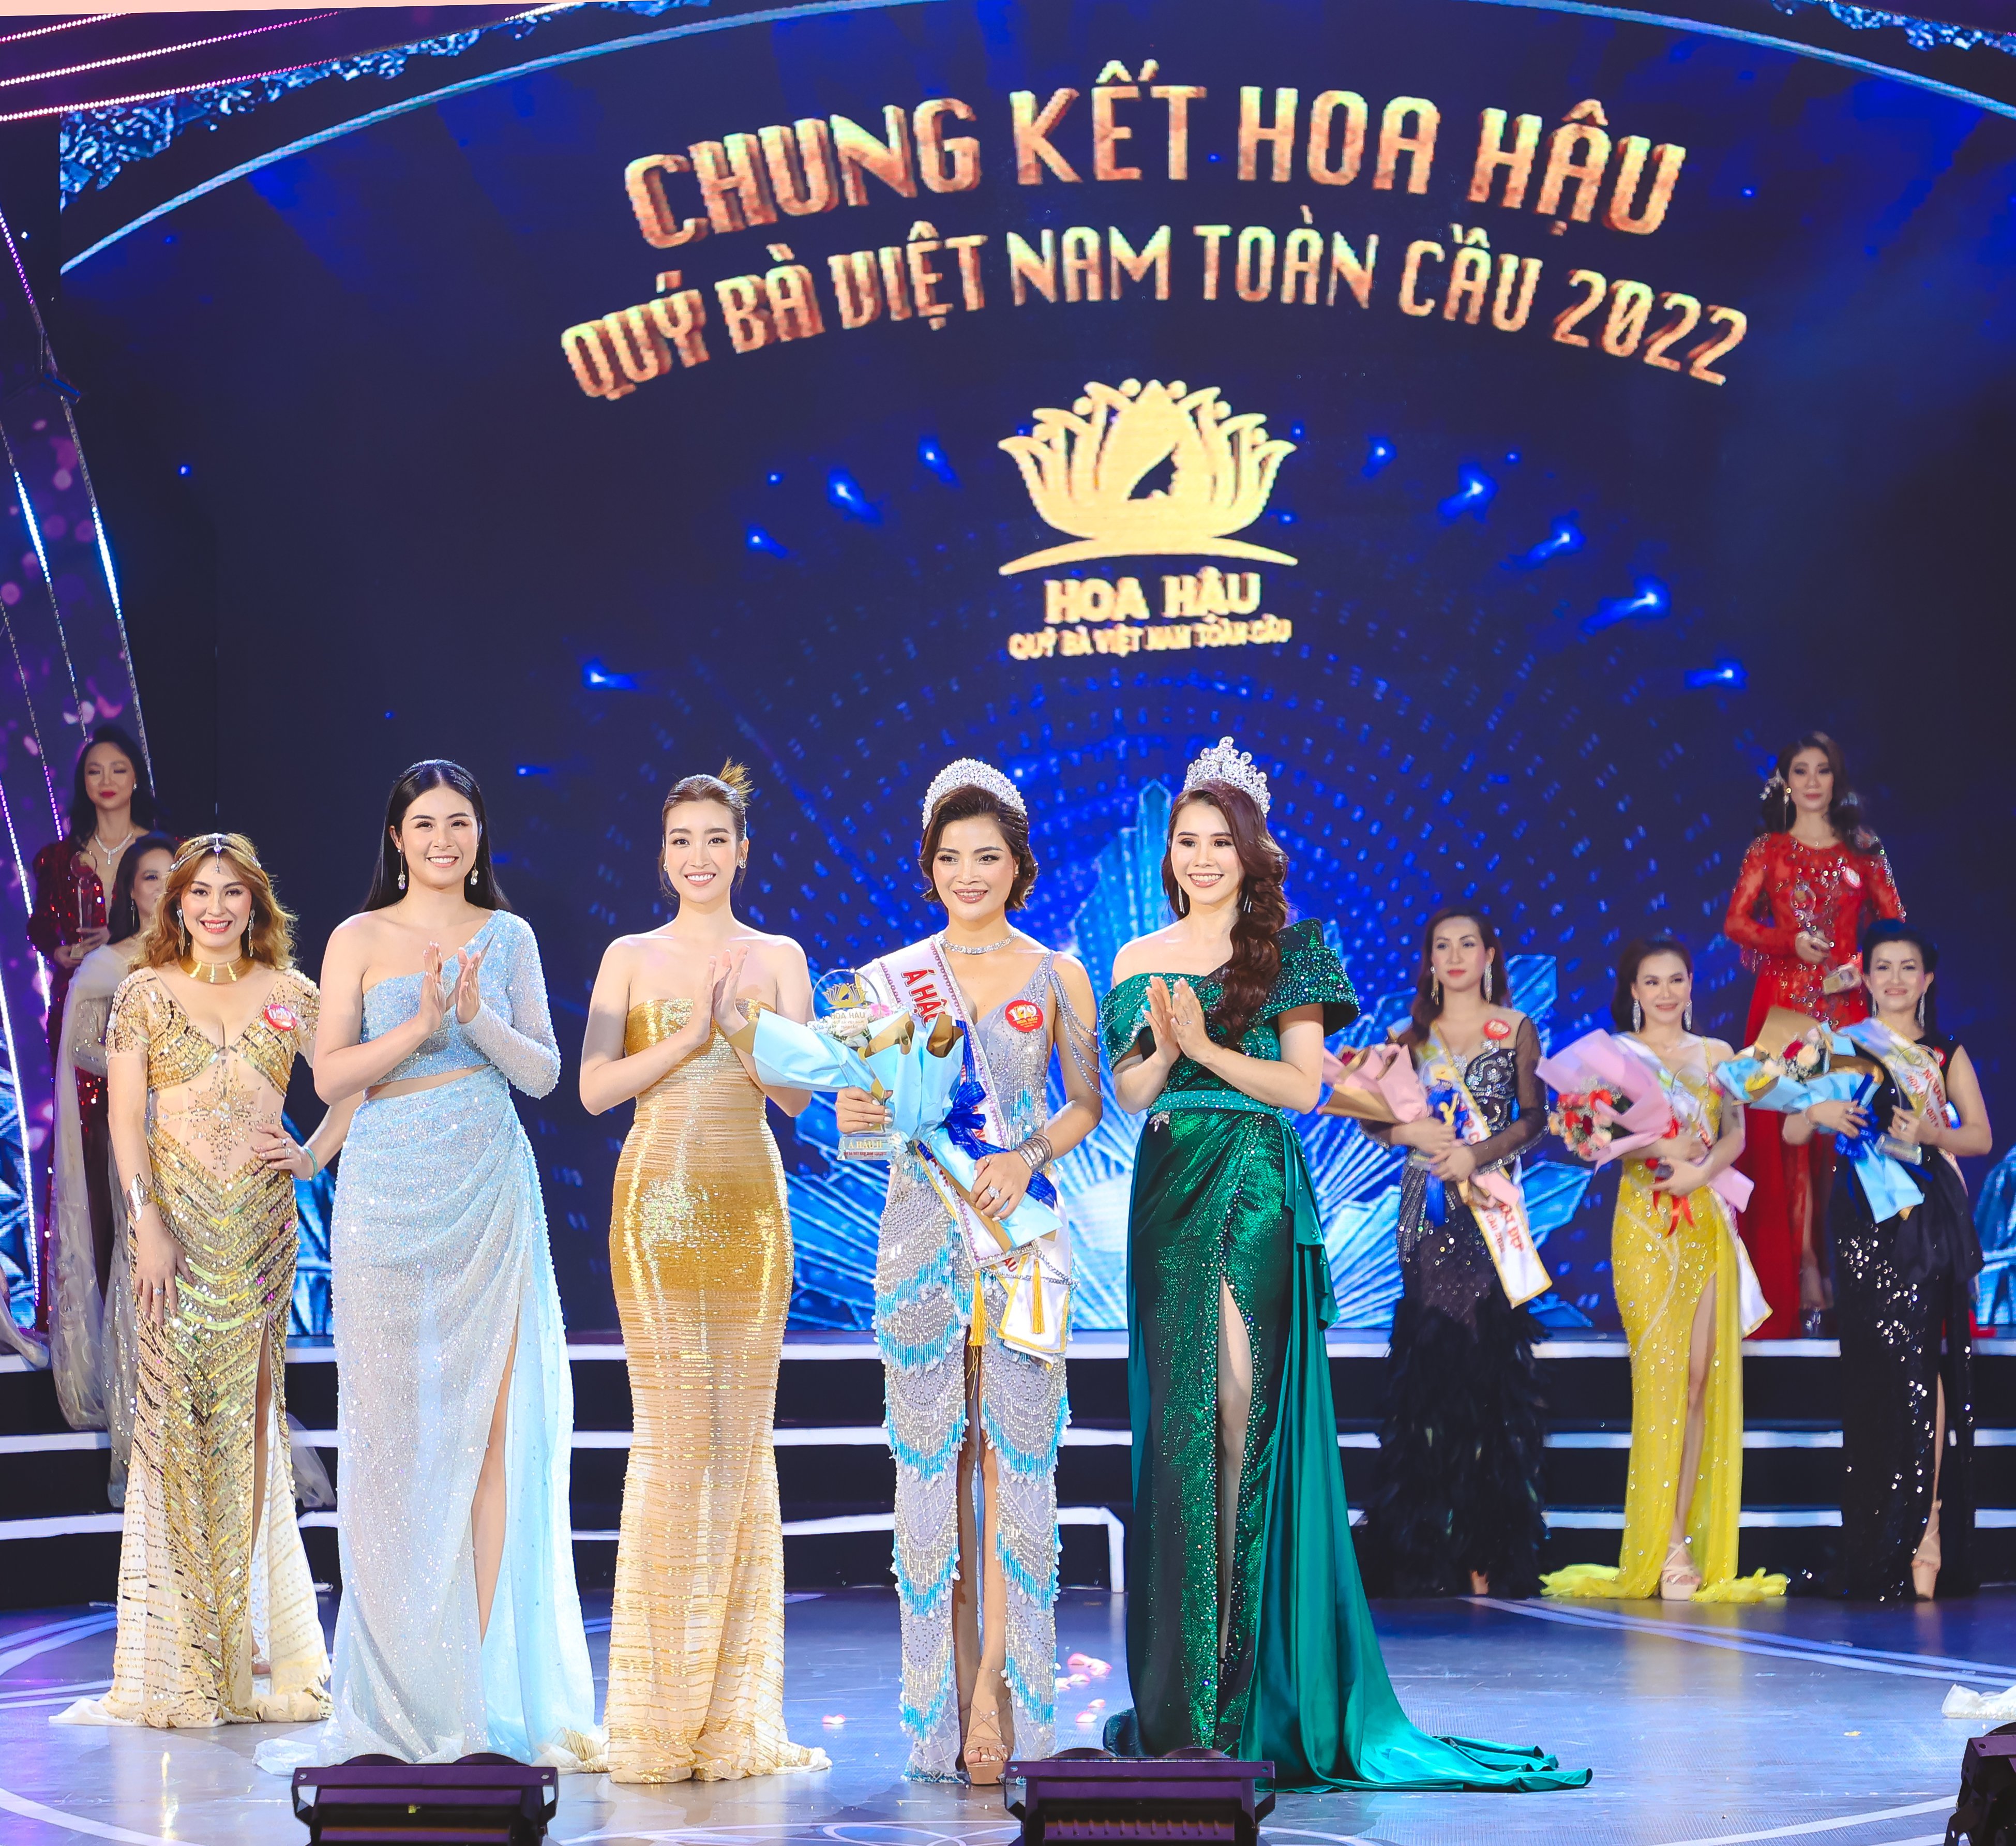 Ngôi vị Á hậu 2 Hoa hậu Quý bà Việt Nam Toàn cầu 2022 đã thuộc về thí sinh Hà Linh